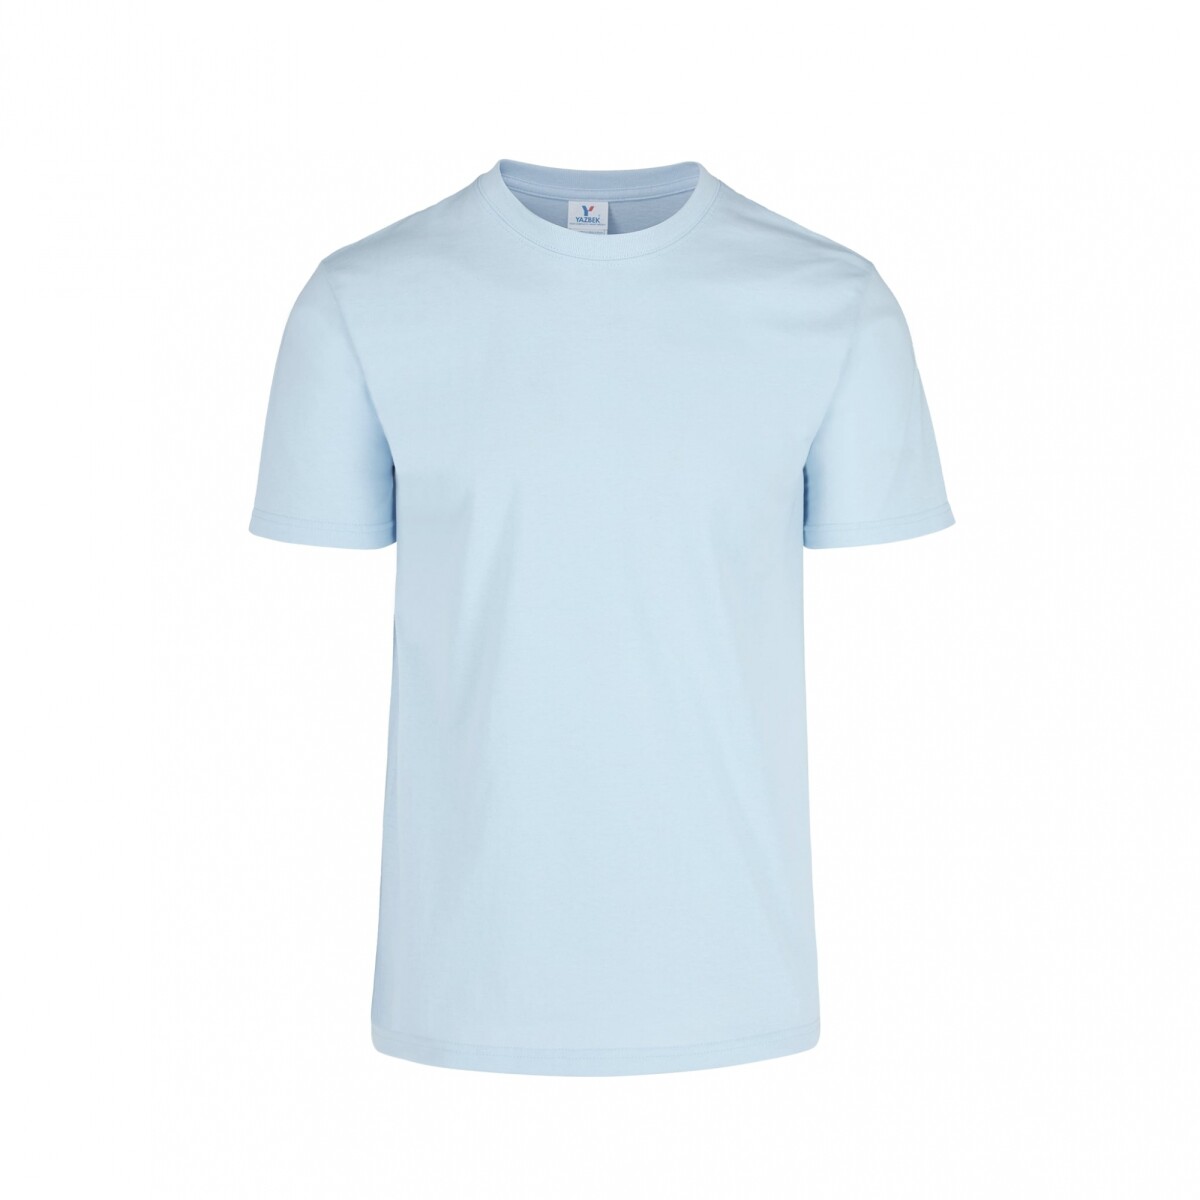 Camiseta a la base peso completo - Azul claro 